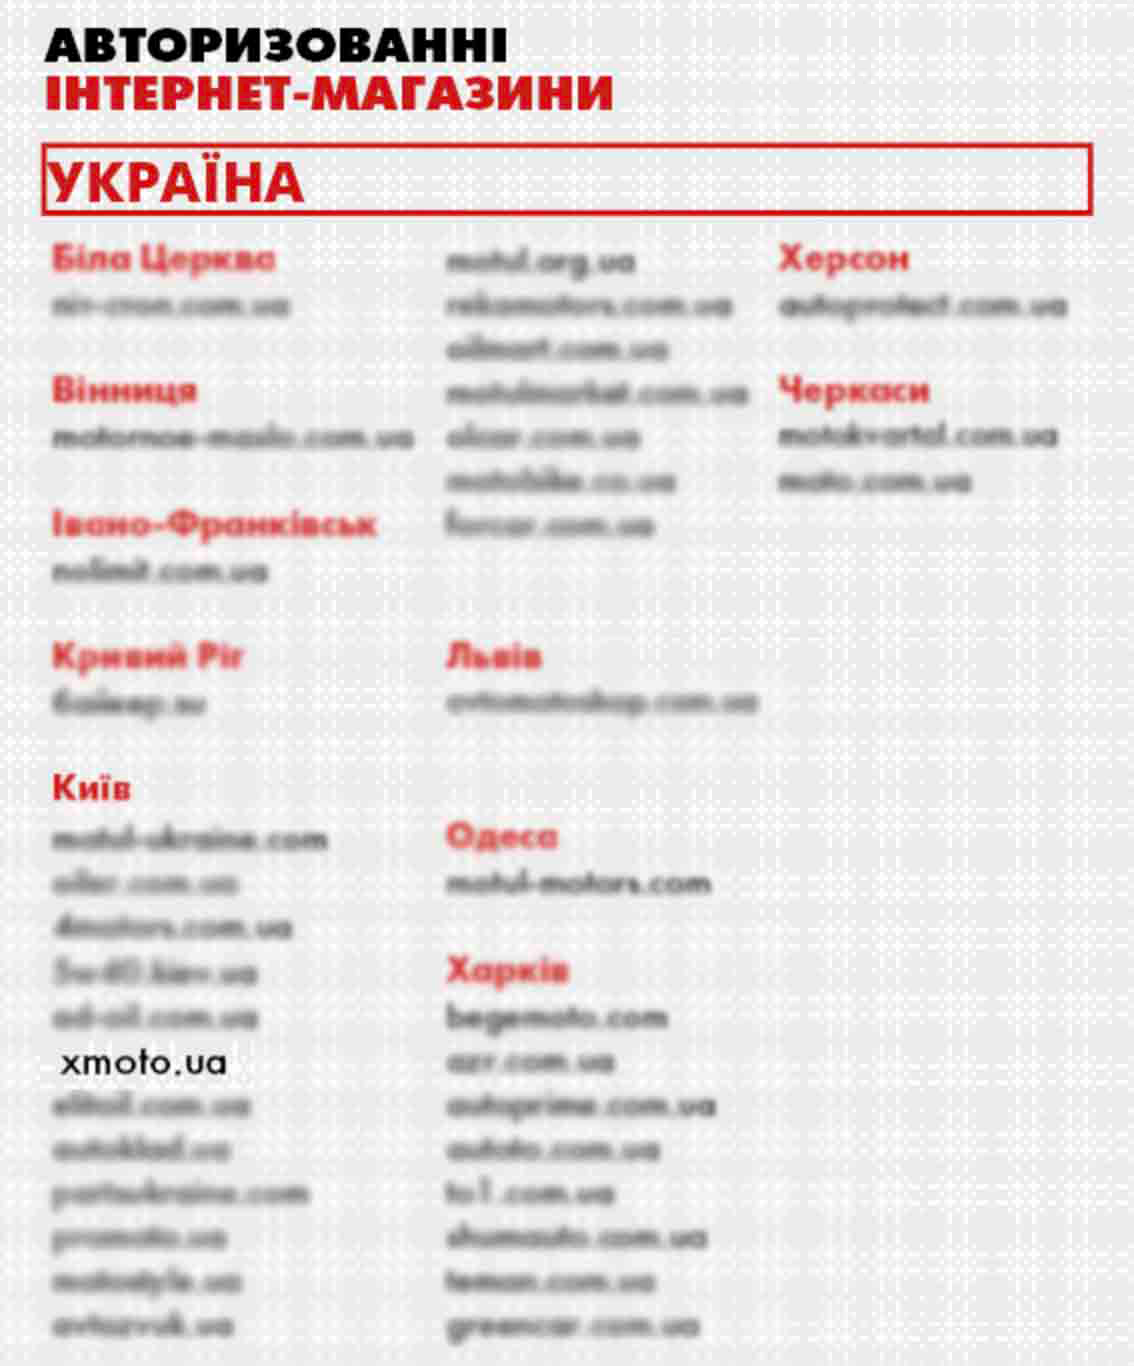 Xmoto.ua - официальный магазин Motul